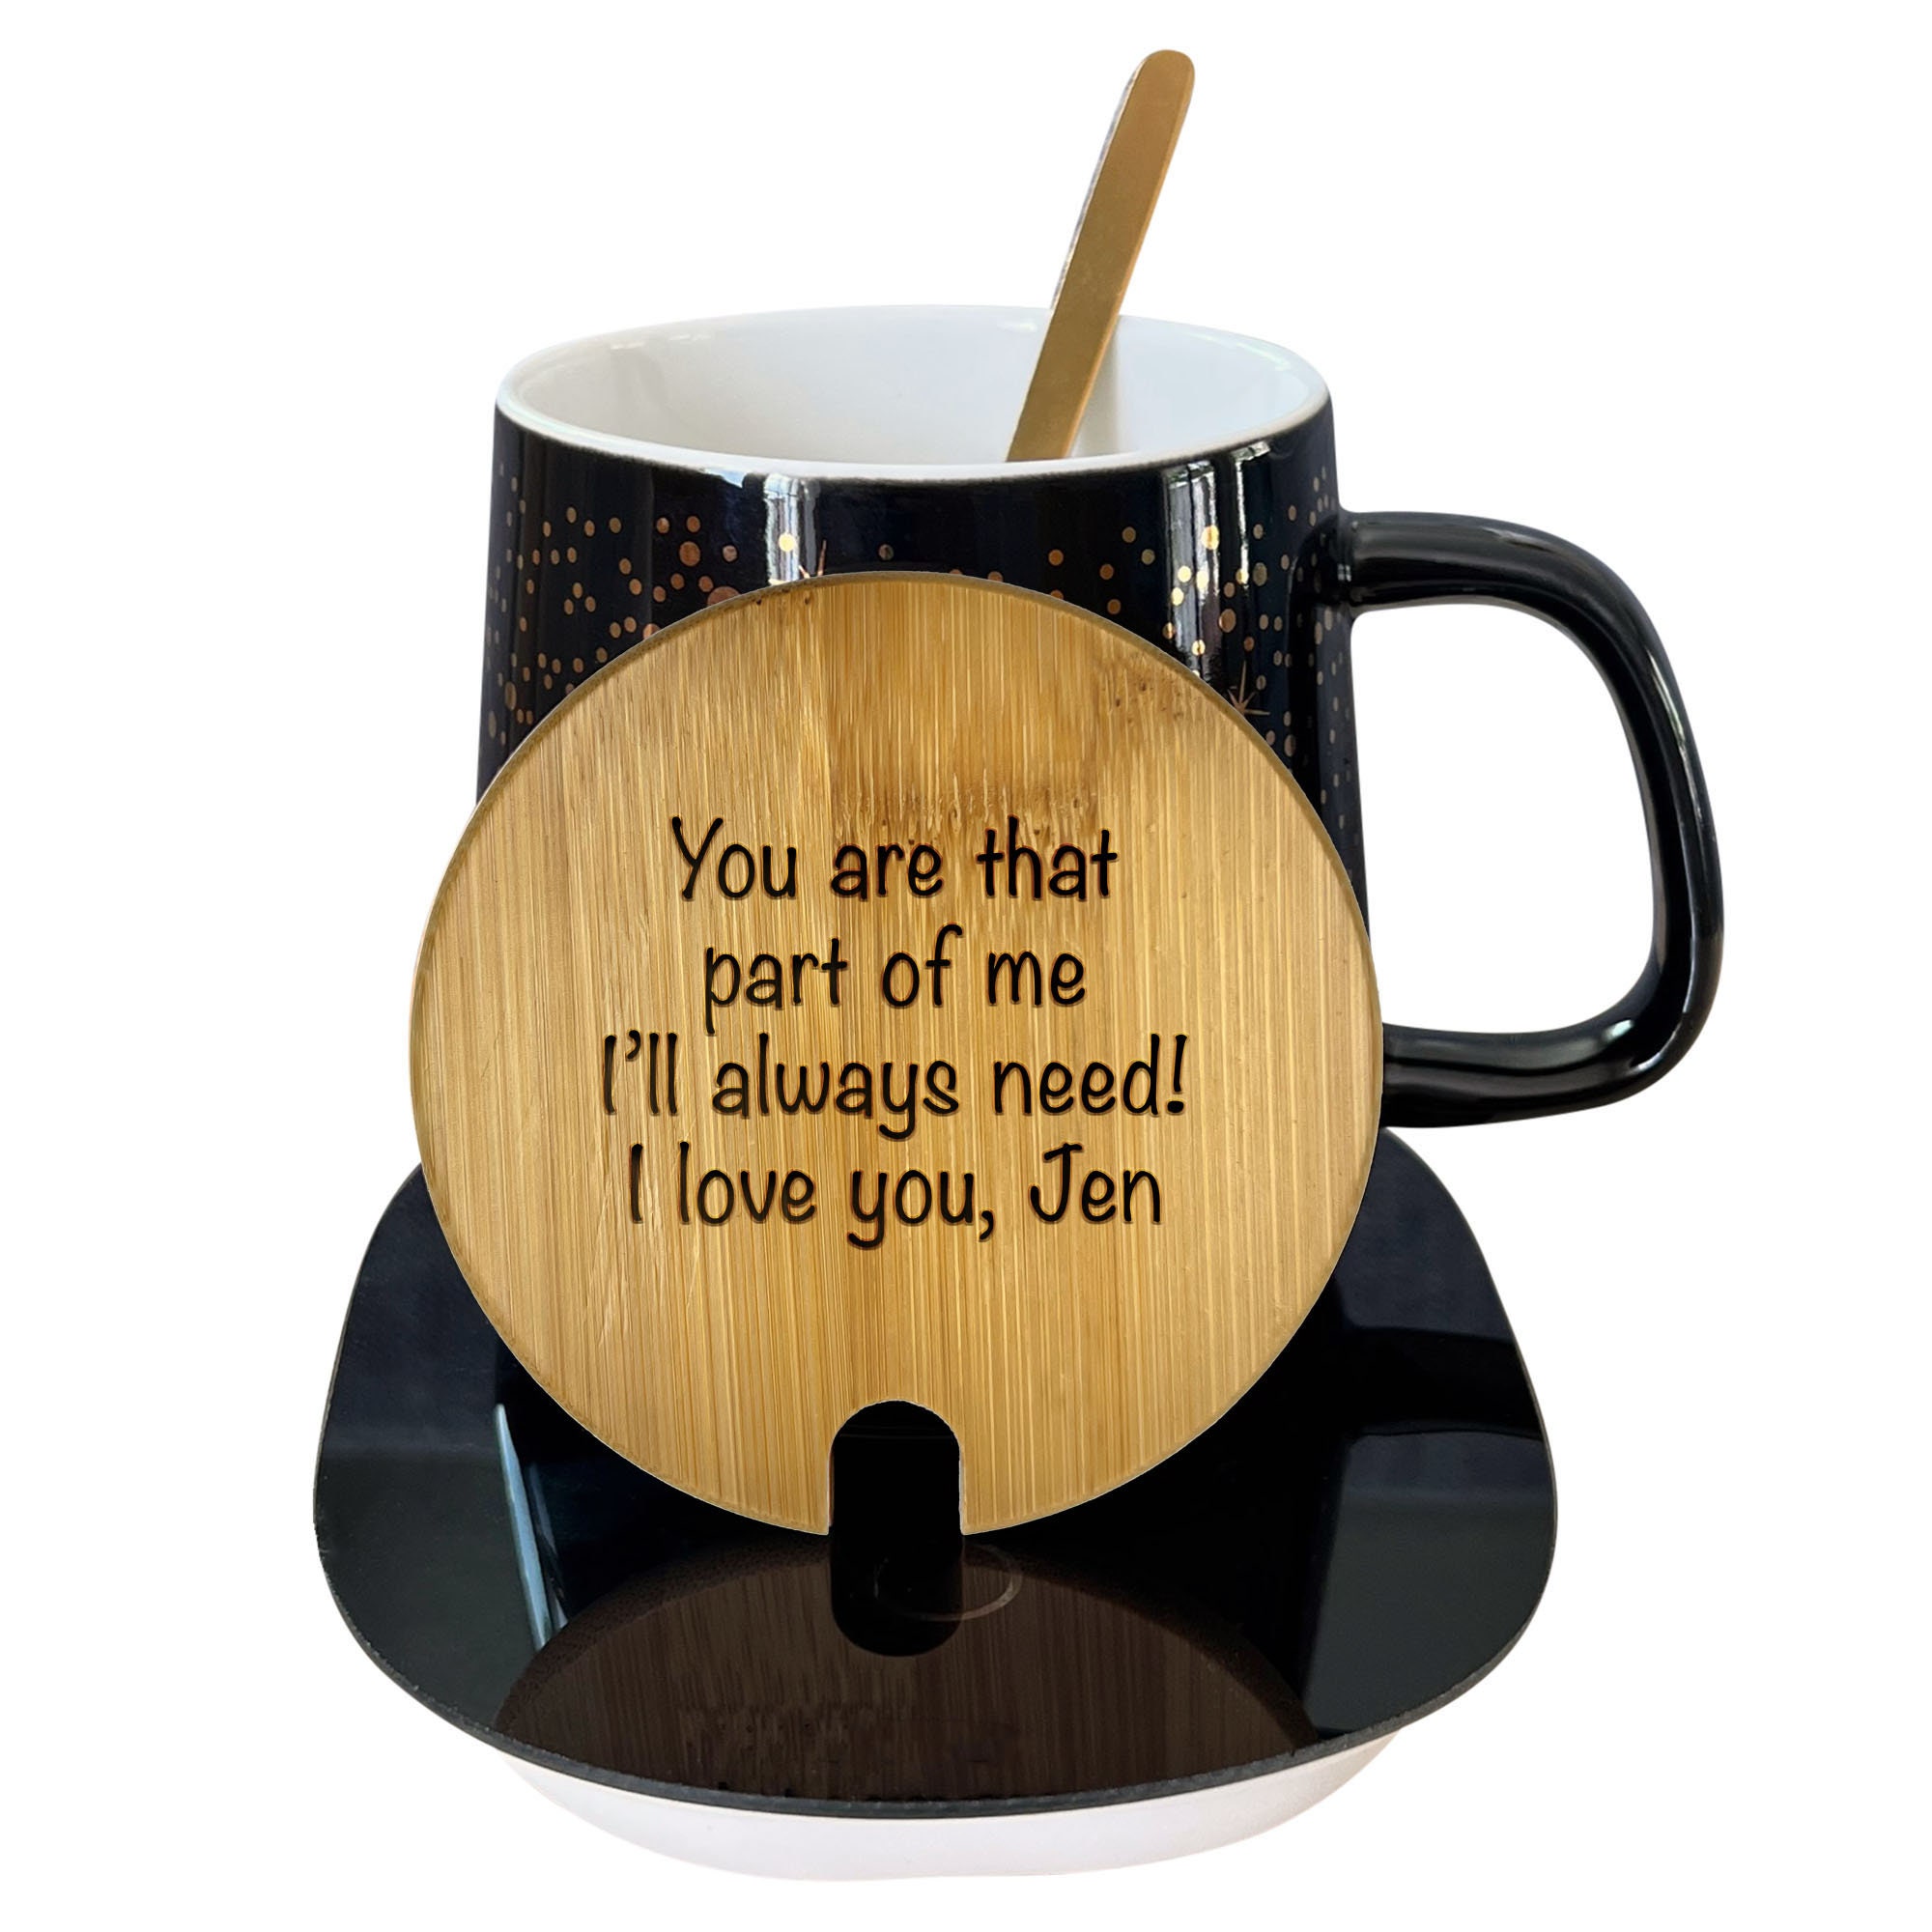 wefrady RNAB0B94LBMF5 coffee mug warmer with mug, coffee cup mug